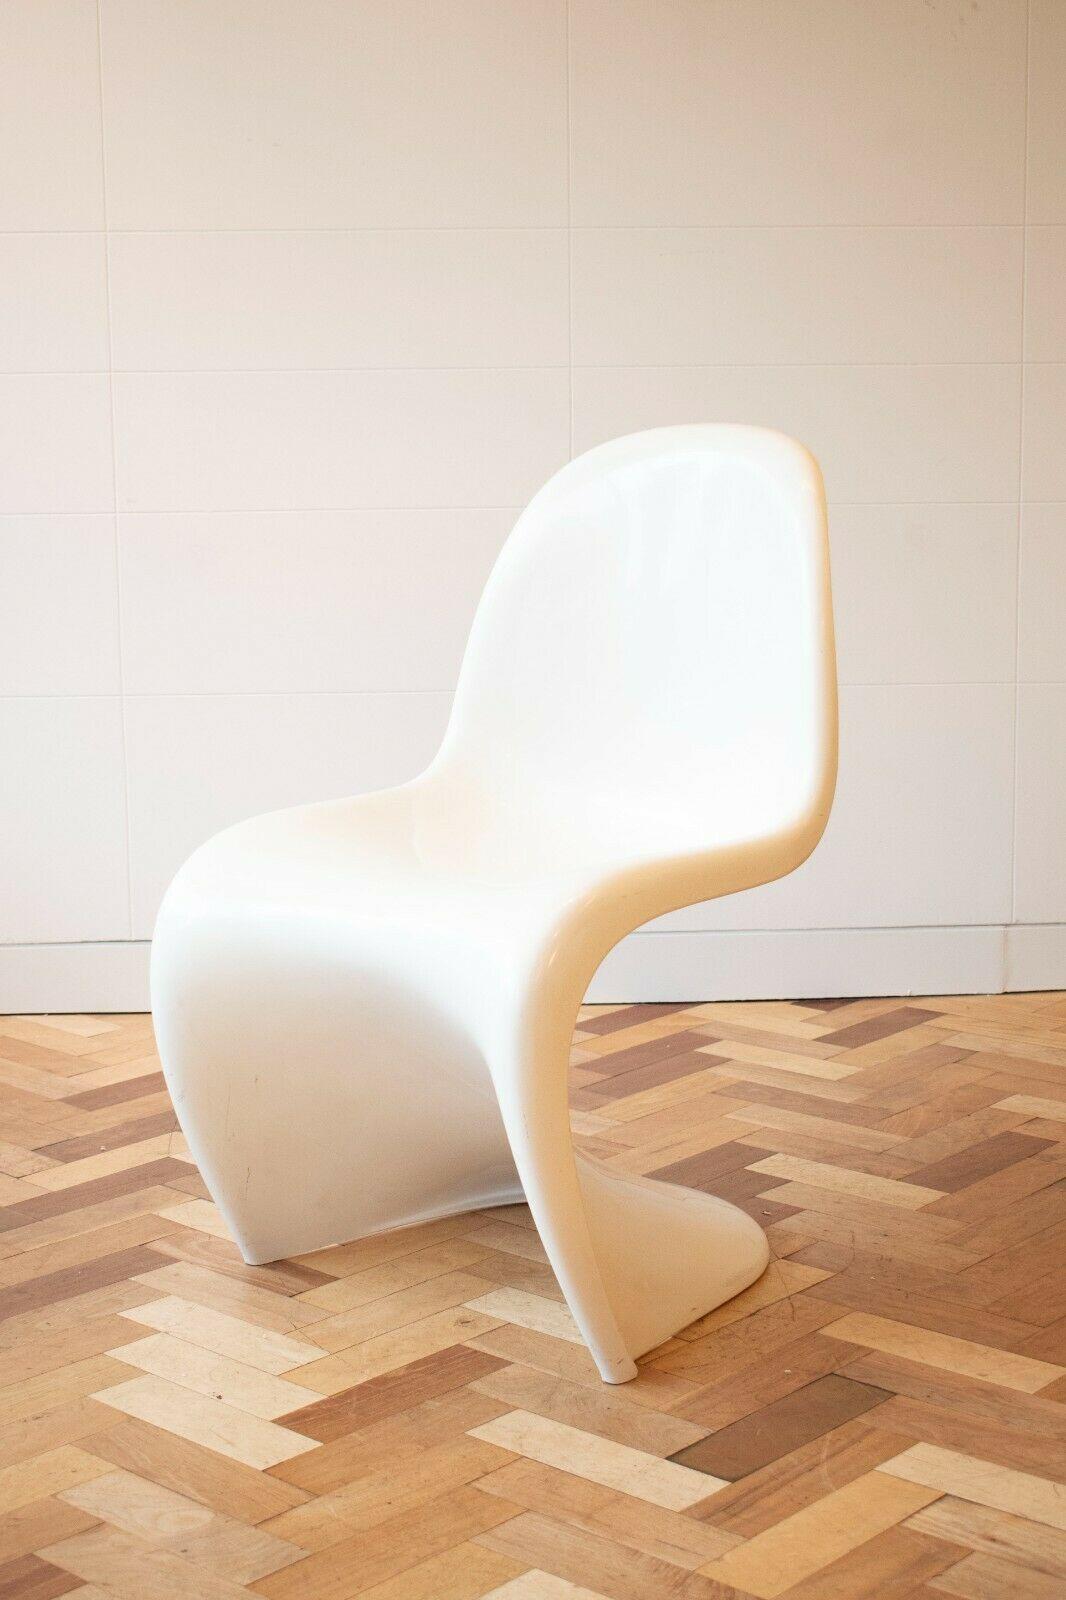 Beistell-/Esszimmerstühle von Verner Panton für Herman Miller, Modernismus, 1970er Jahre (Ende des 20. Jahrhunderts)